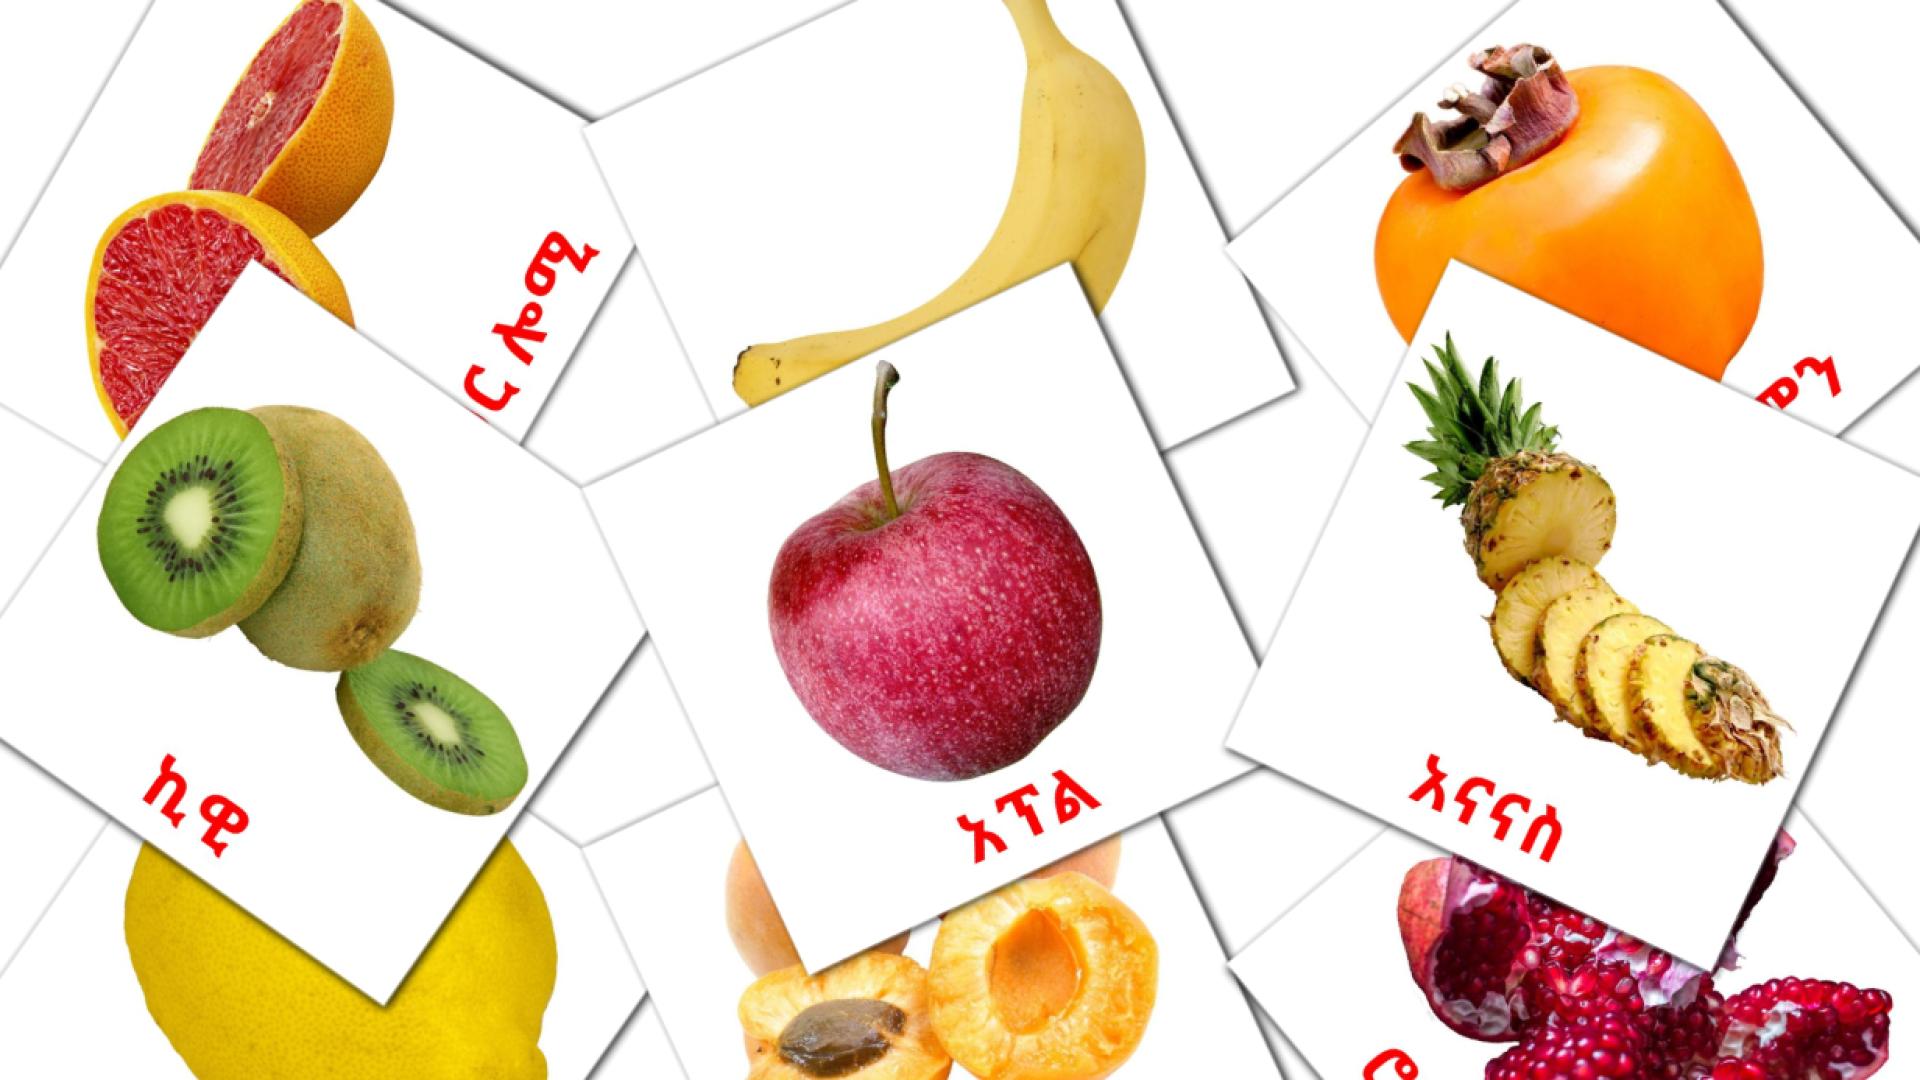 Les Fruits - cartes de vocabulaire amharique